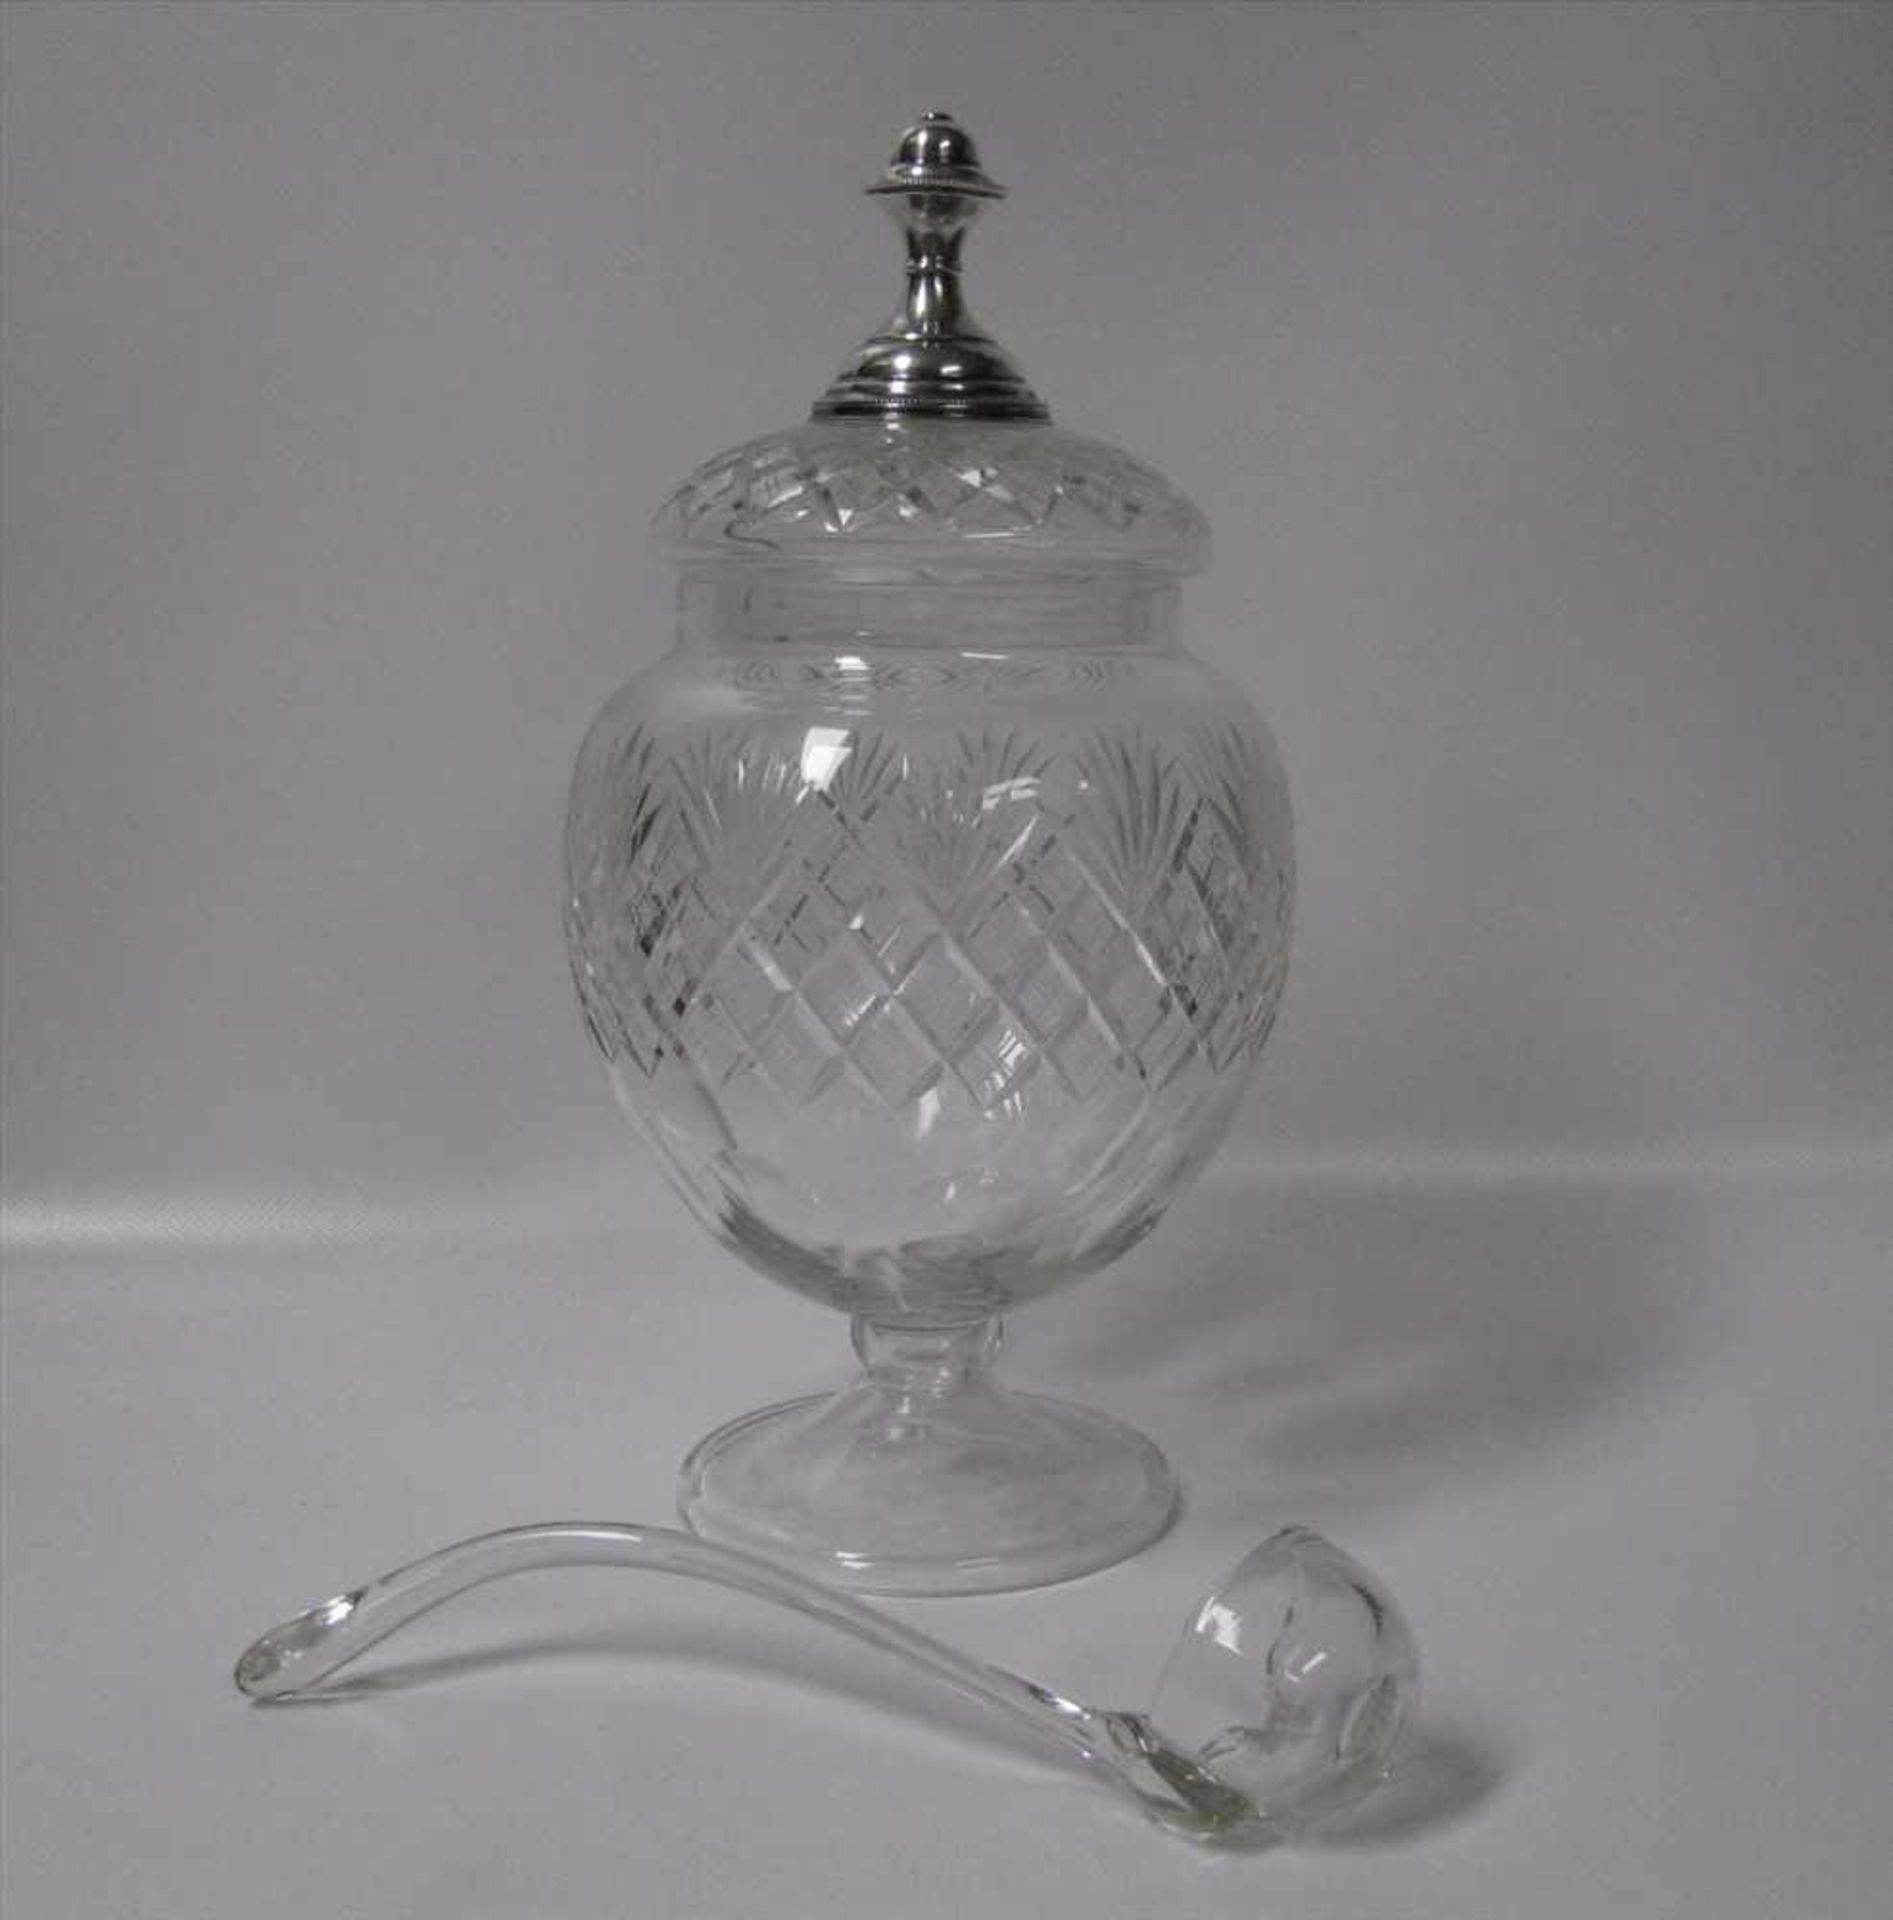 Bowlegefäß mit Silberknauf und Glaskelle, um 1900, Bleikristall fein beschliffen, h 30 cm, d 16,5